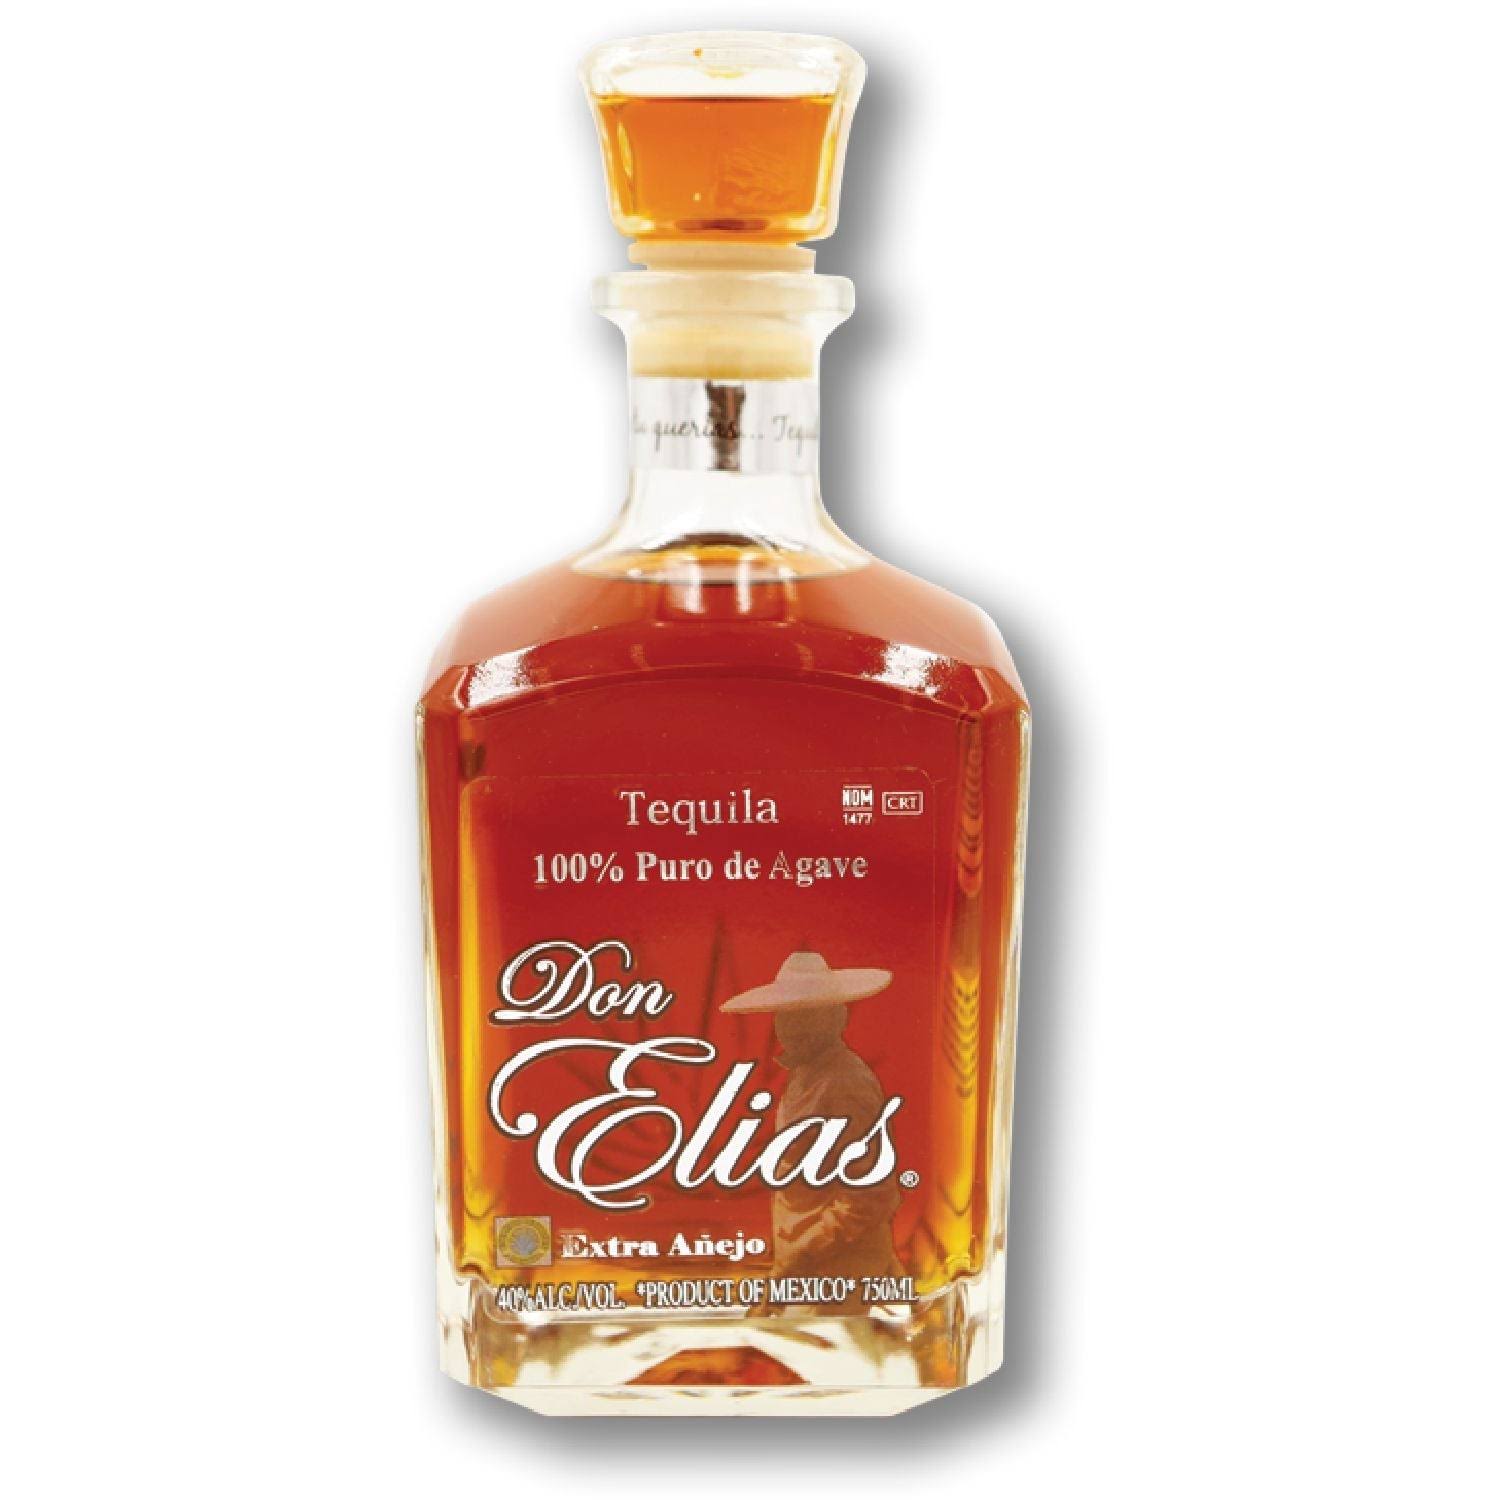 Don Elias Extra Anejo Tequila